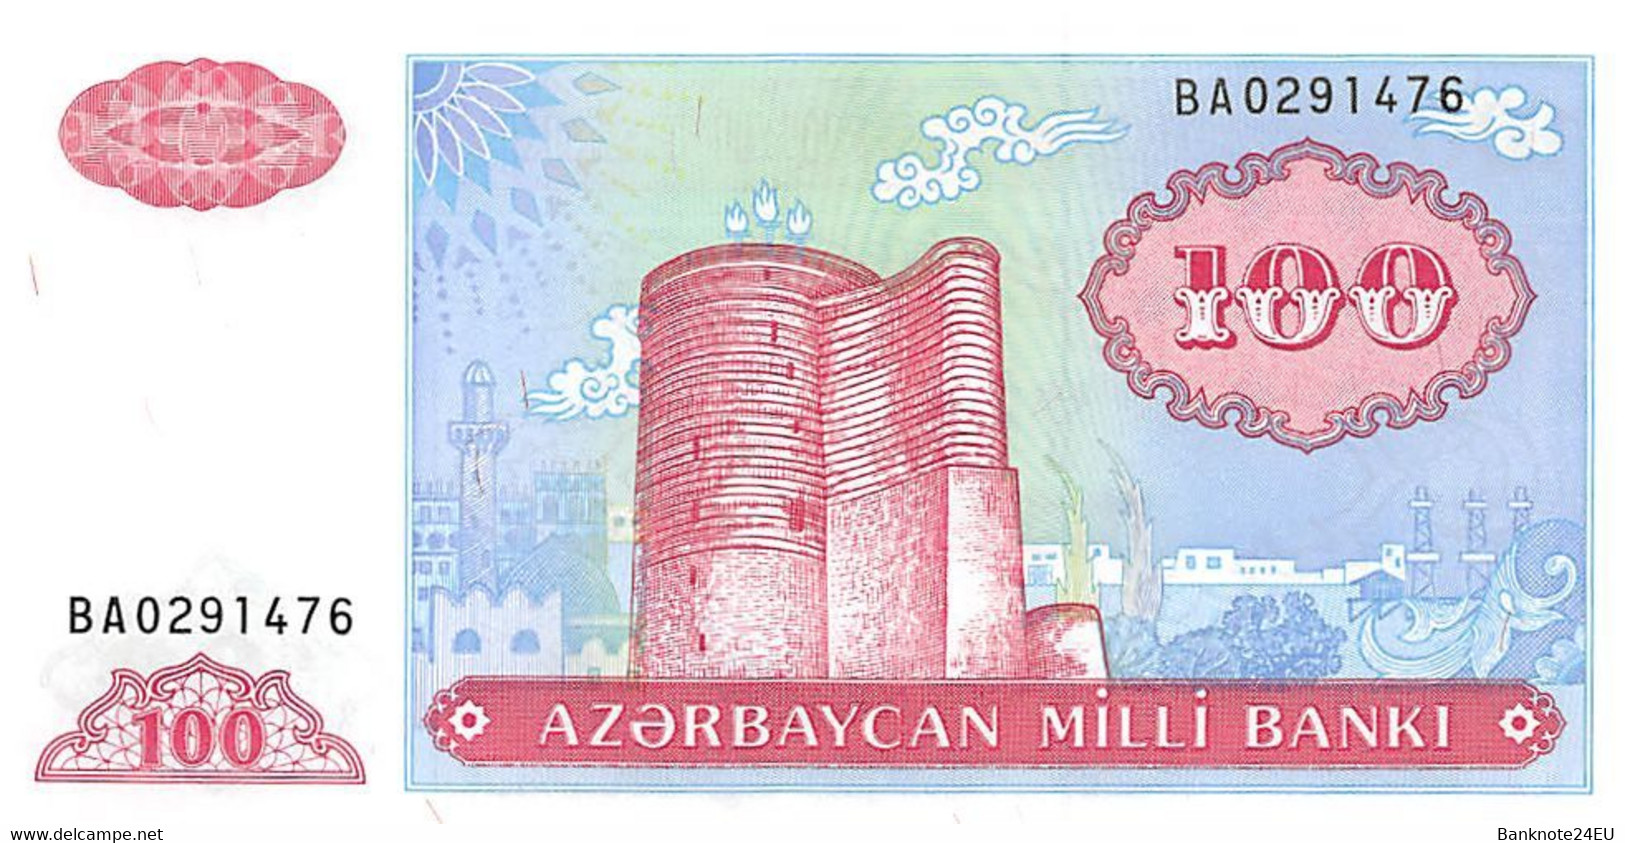 Azerbaijan 100 Manat 1993 Unc Pn 18b - Azerbaïdjan